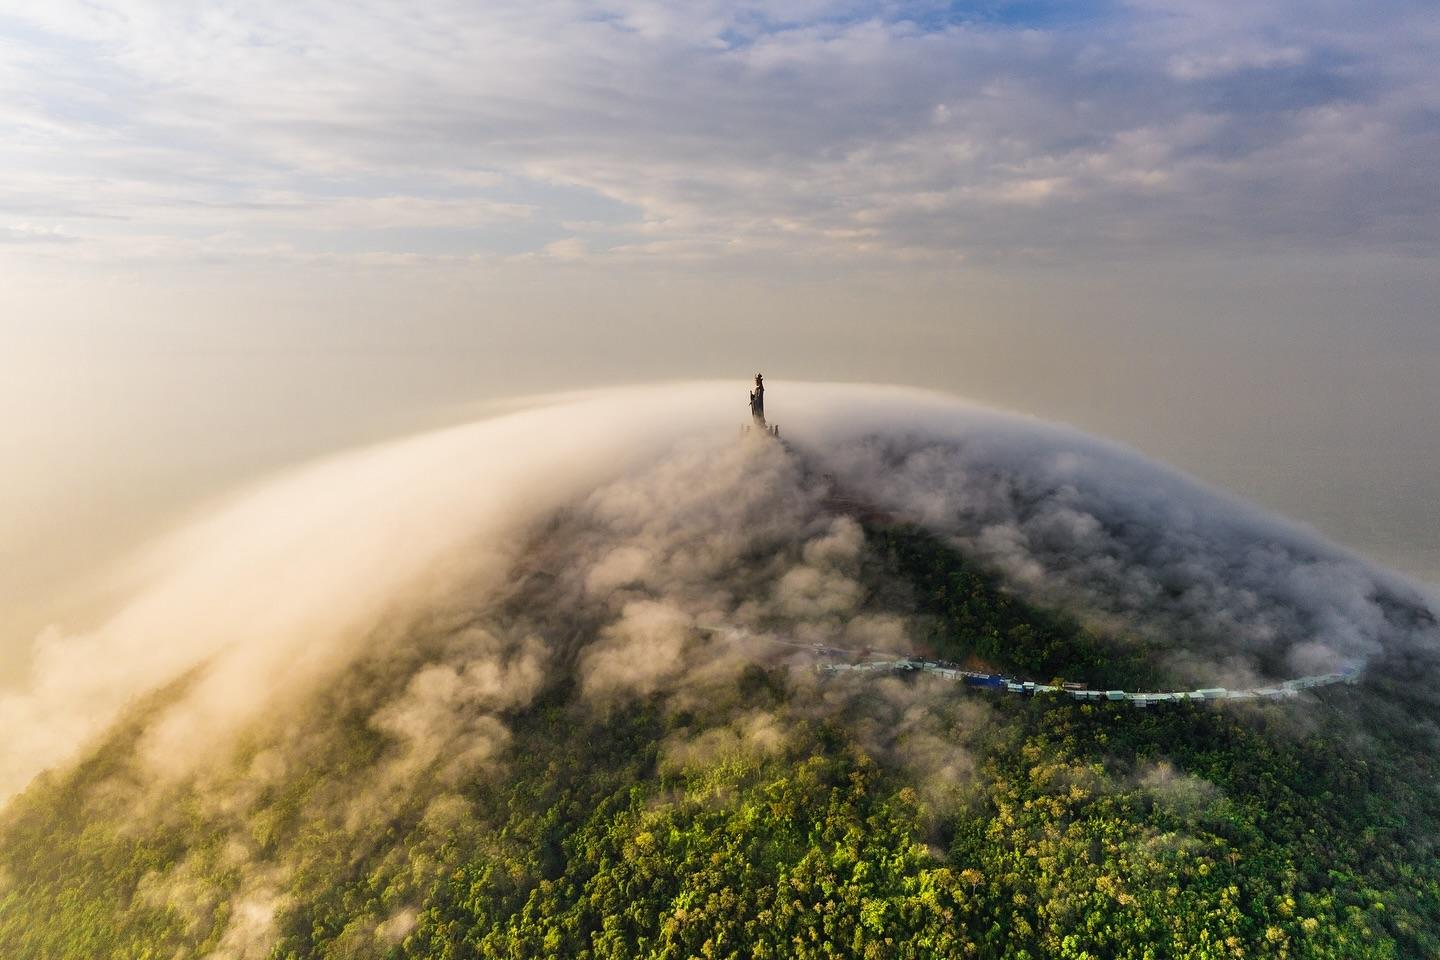  越南巴登山顶的佛像，来自摄影师ran Tuan Viet。 